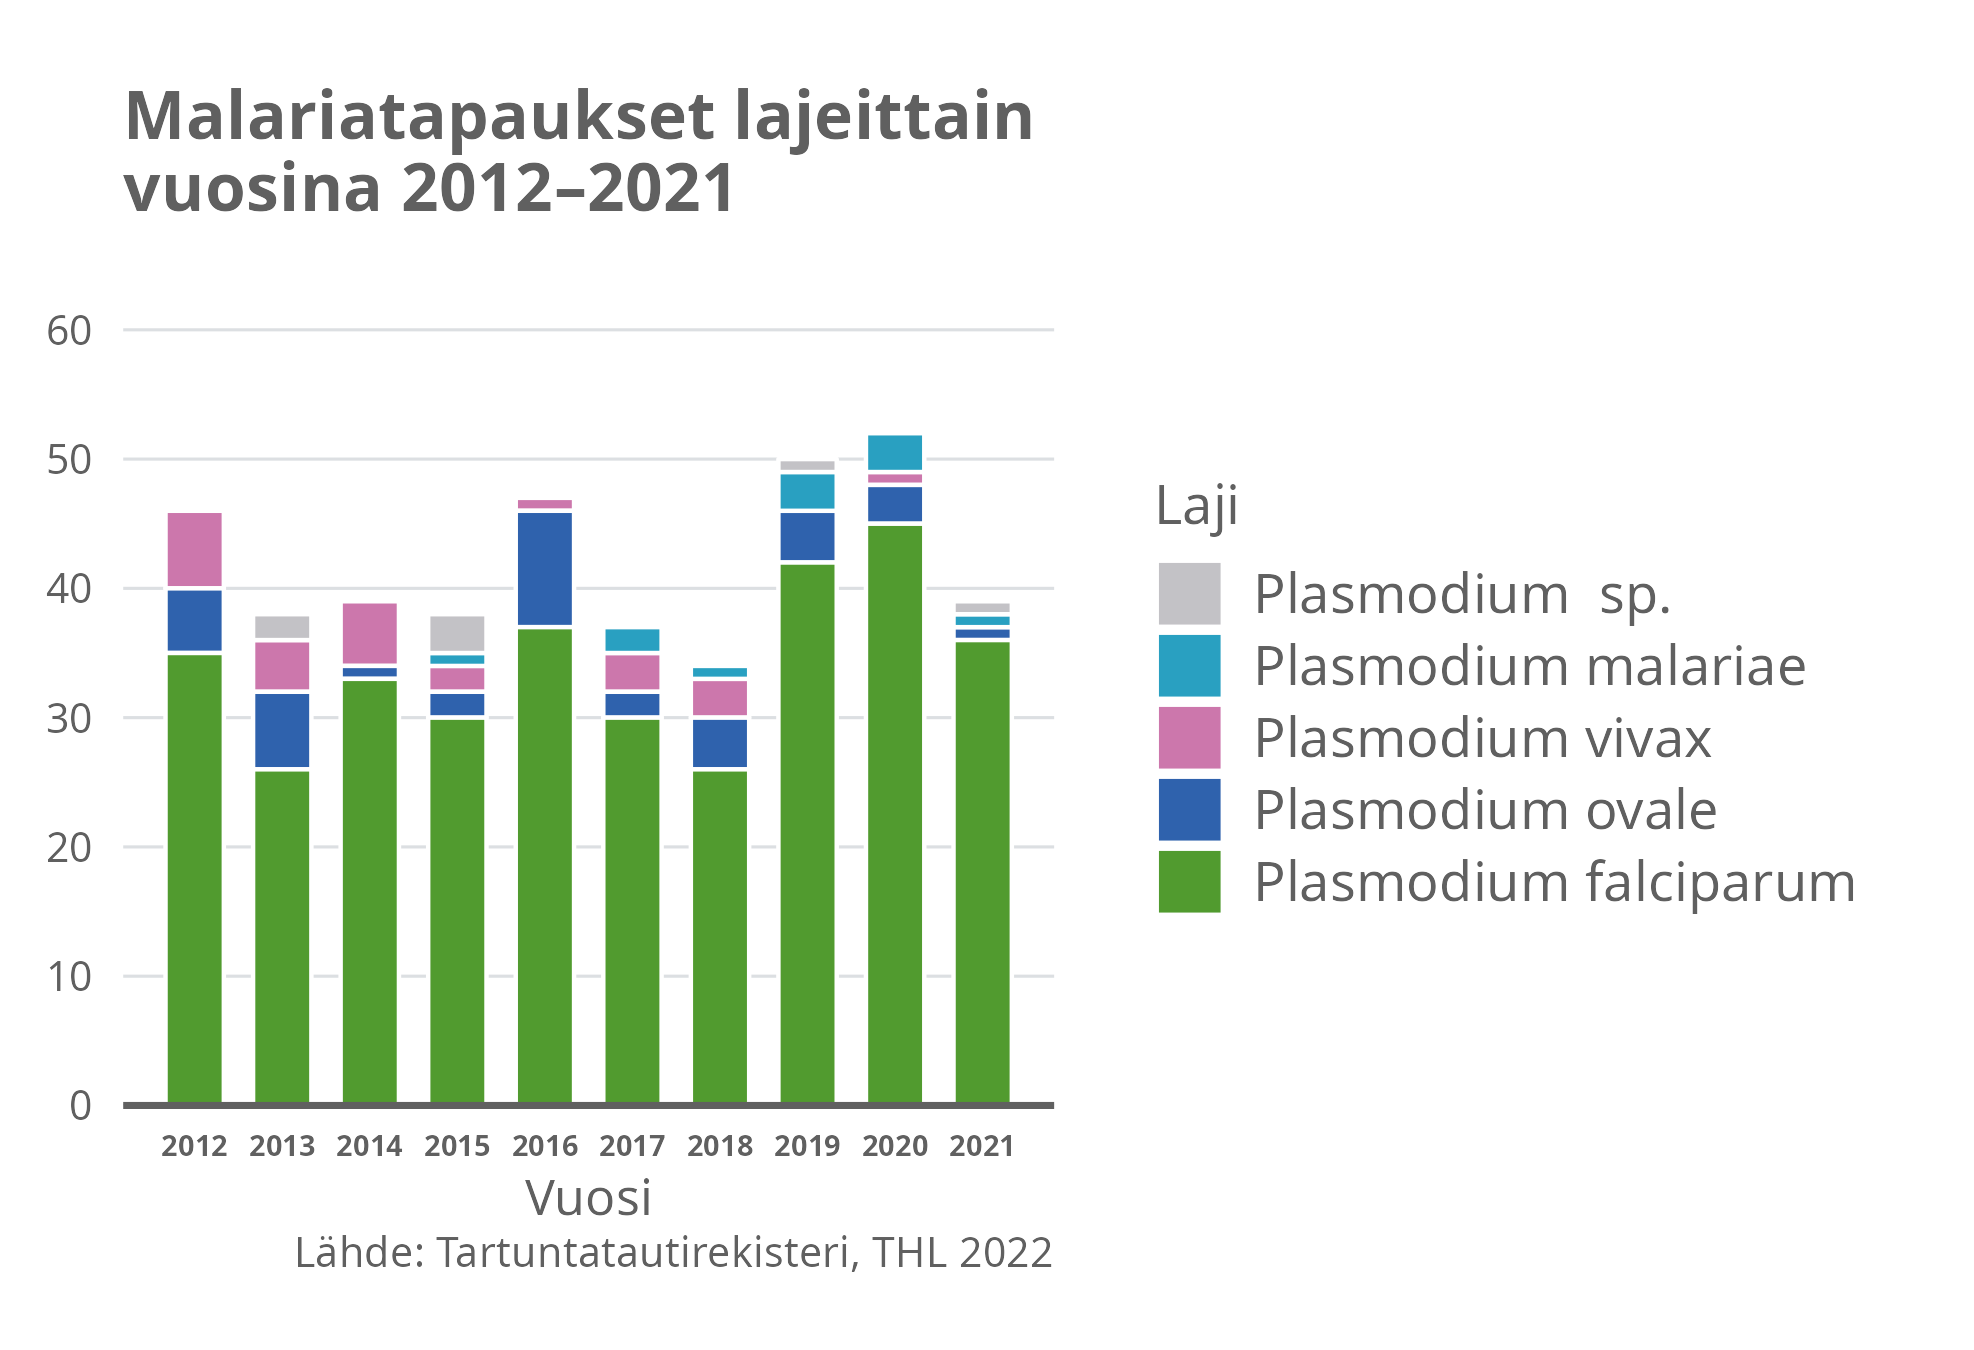 Malariatapaukset lajeittain vuosina 2012-2021.